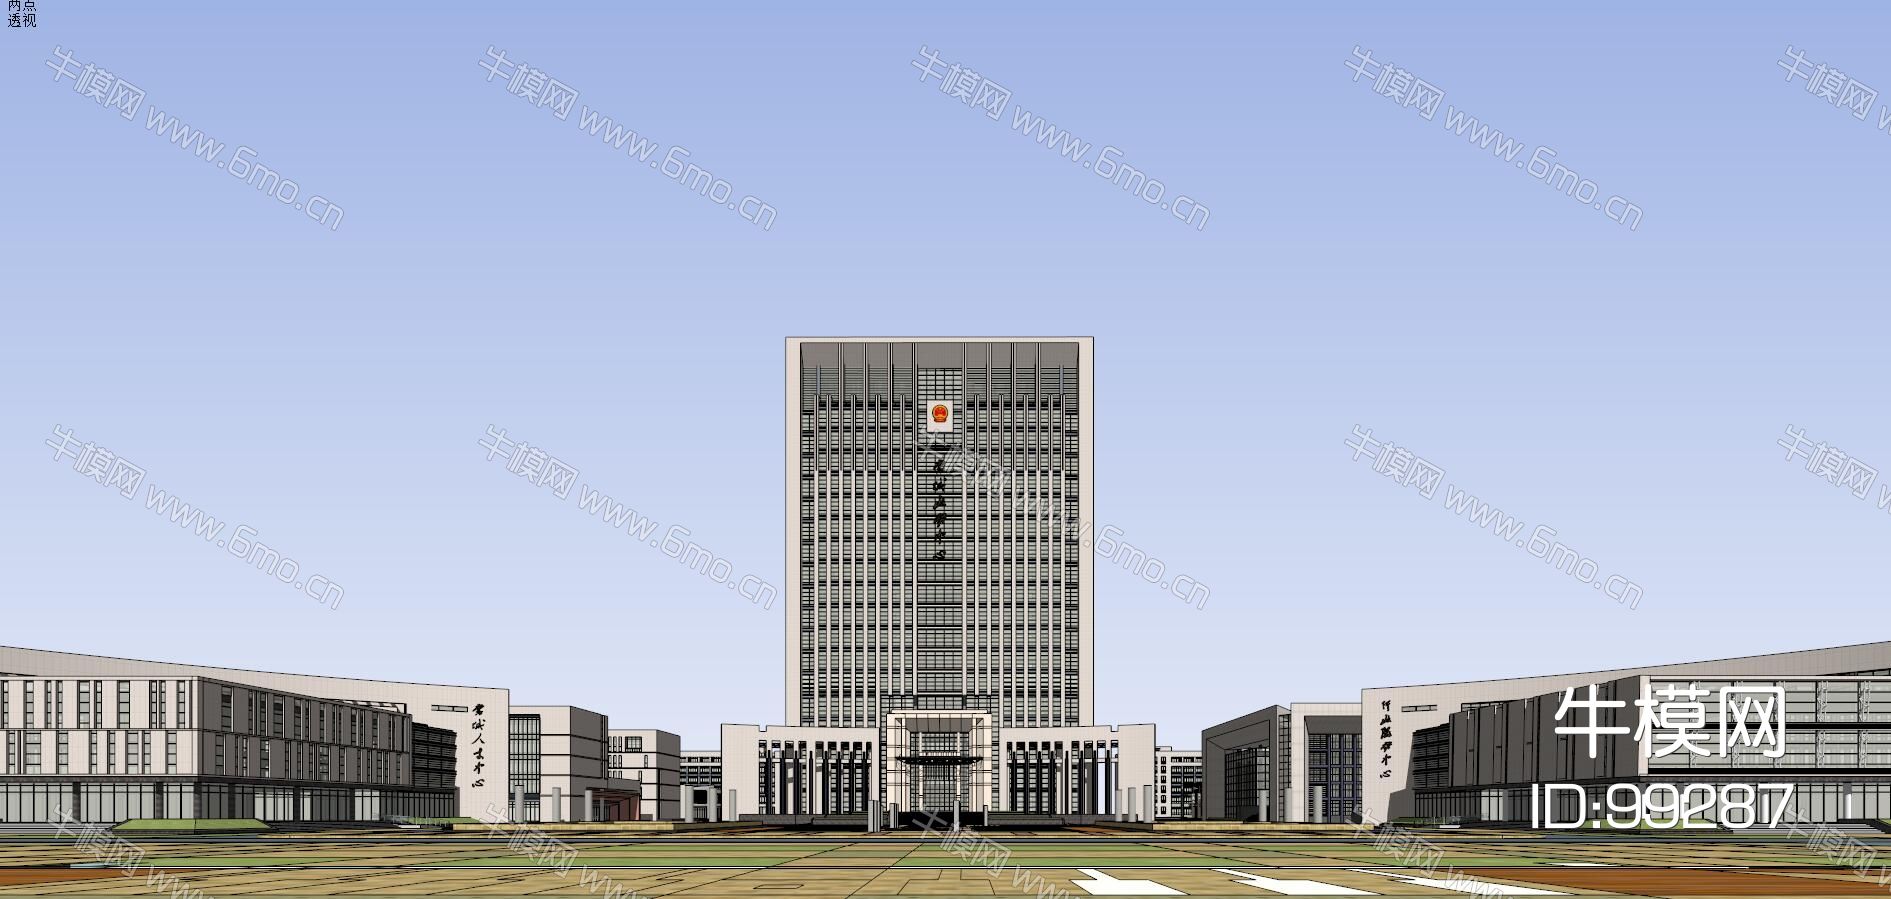 蒙城行政中心政府办公楼